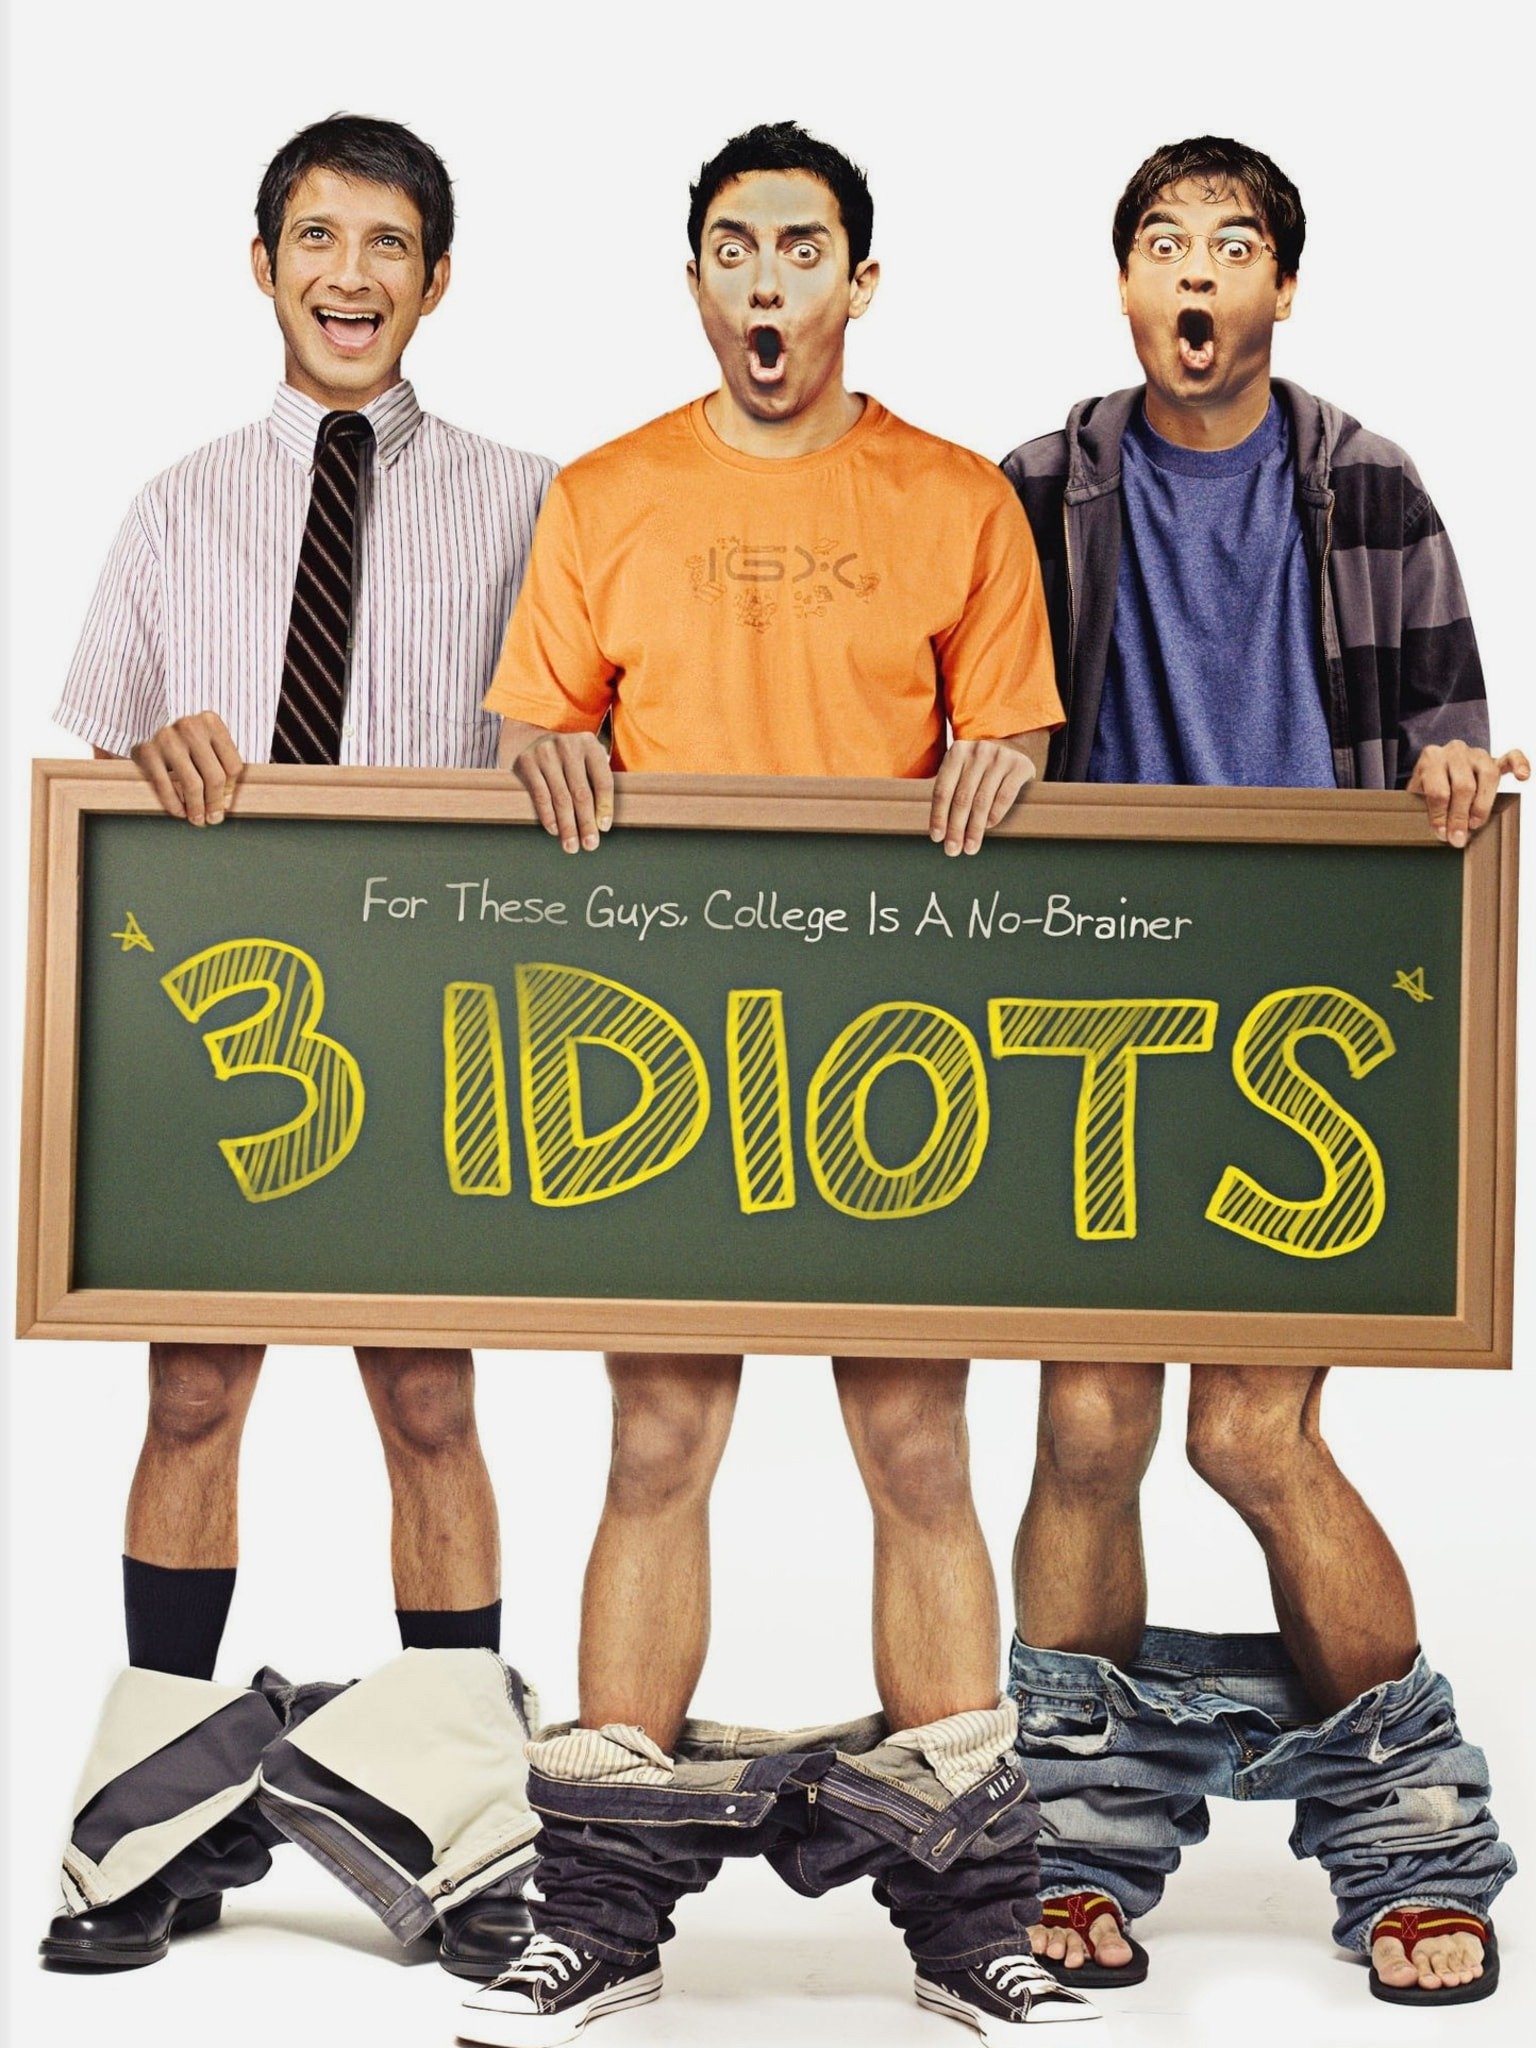 3 idiots film